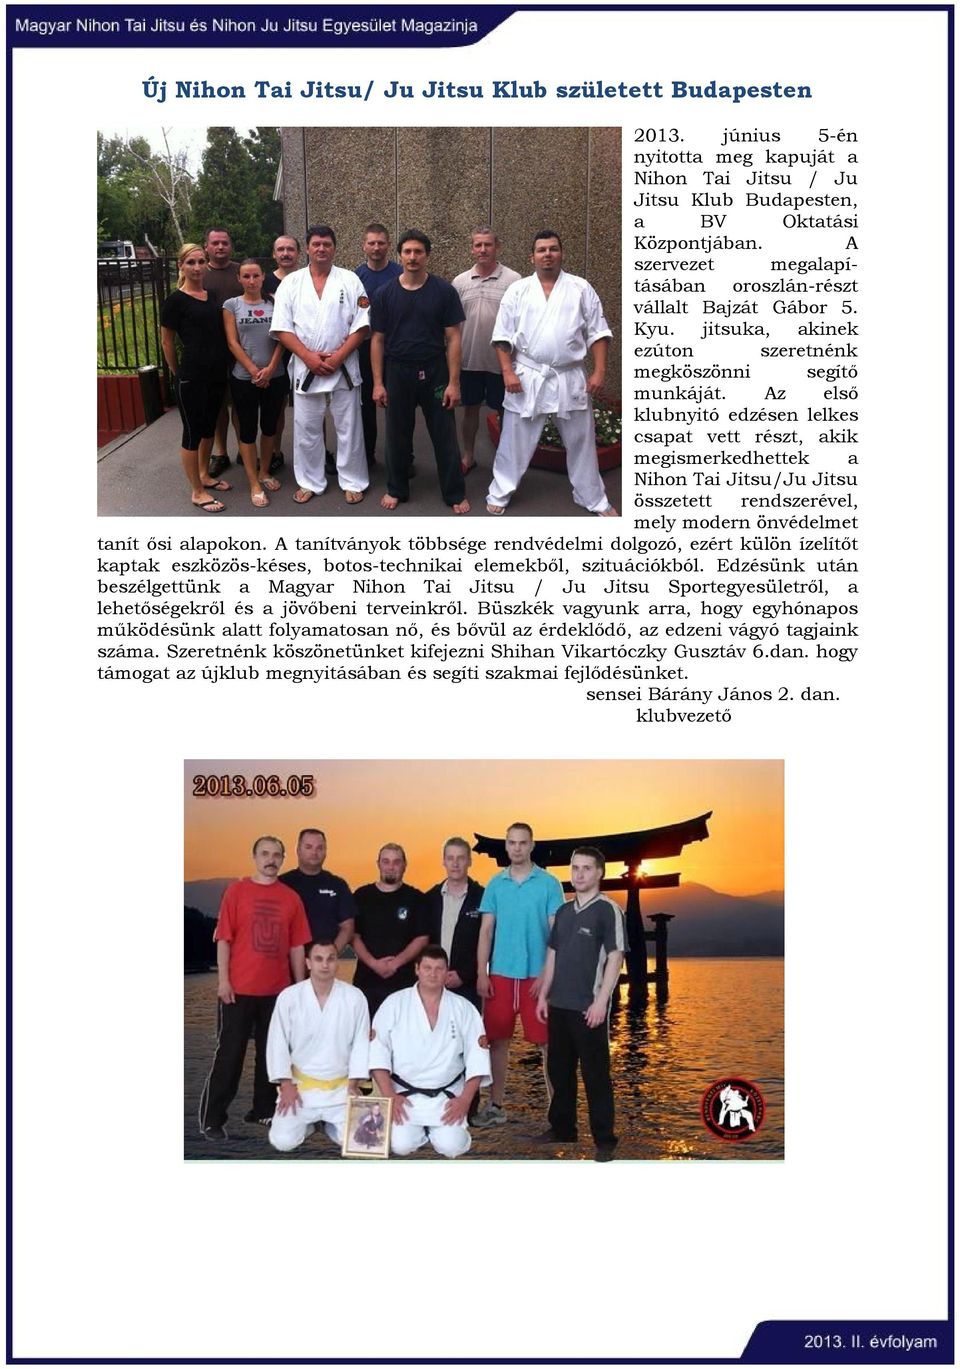 Az első klubnyitó edzésen lelkes csapat vett részt, akik megismerkedhettek a Nihon Tai Jitsu/Ju Jitsu összetett rendszerével, mely modern önvédelmet tanít ősi alapokon.